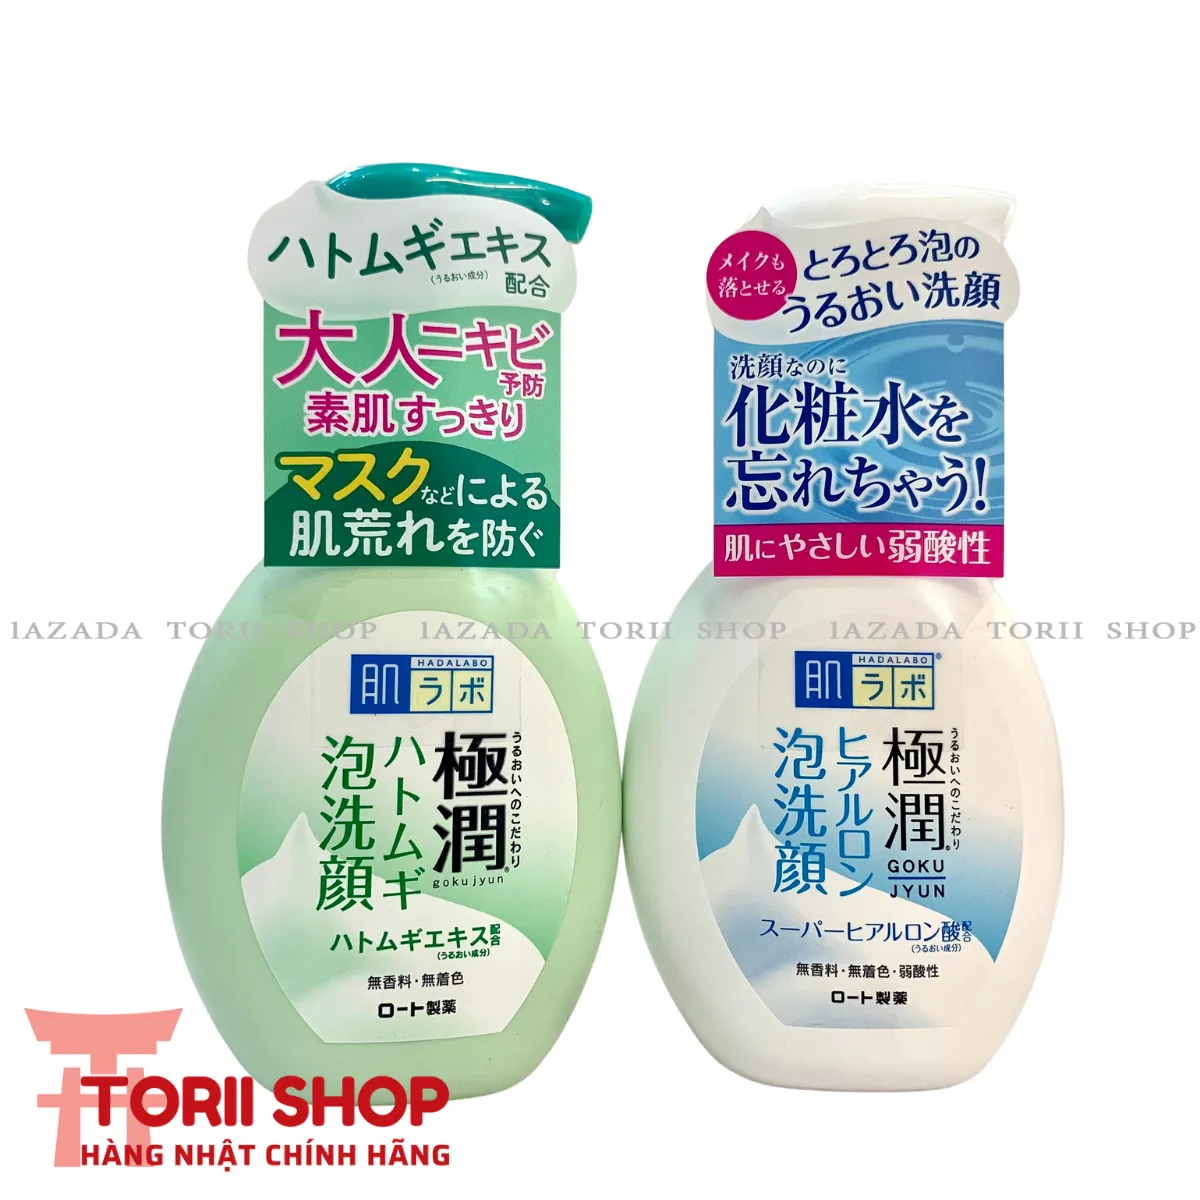 Sữa rửa mặt tạo bọt Hadalabo nội địa Nhật Bản 160ml đủ loại màu trắng cho da thường, màu xanh cho da nhờn, mụn Hada labo Gokujyun Foaming Cleanser chính hãng dạng chai tạo bọt sẵn